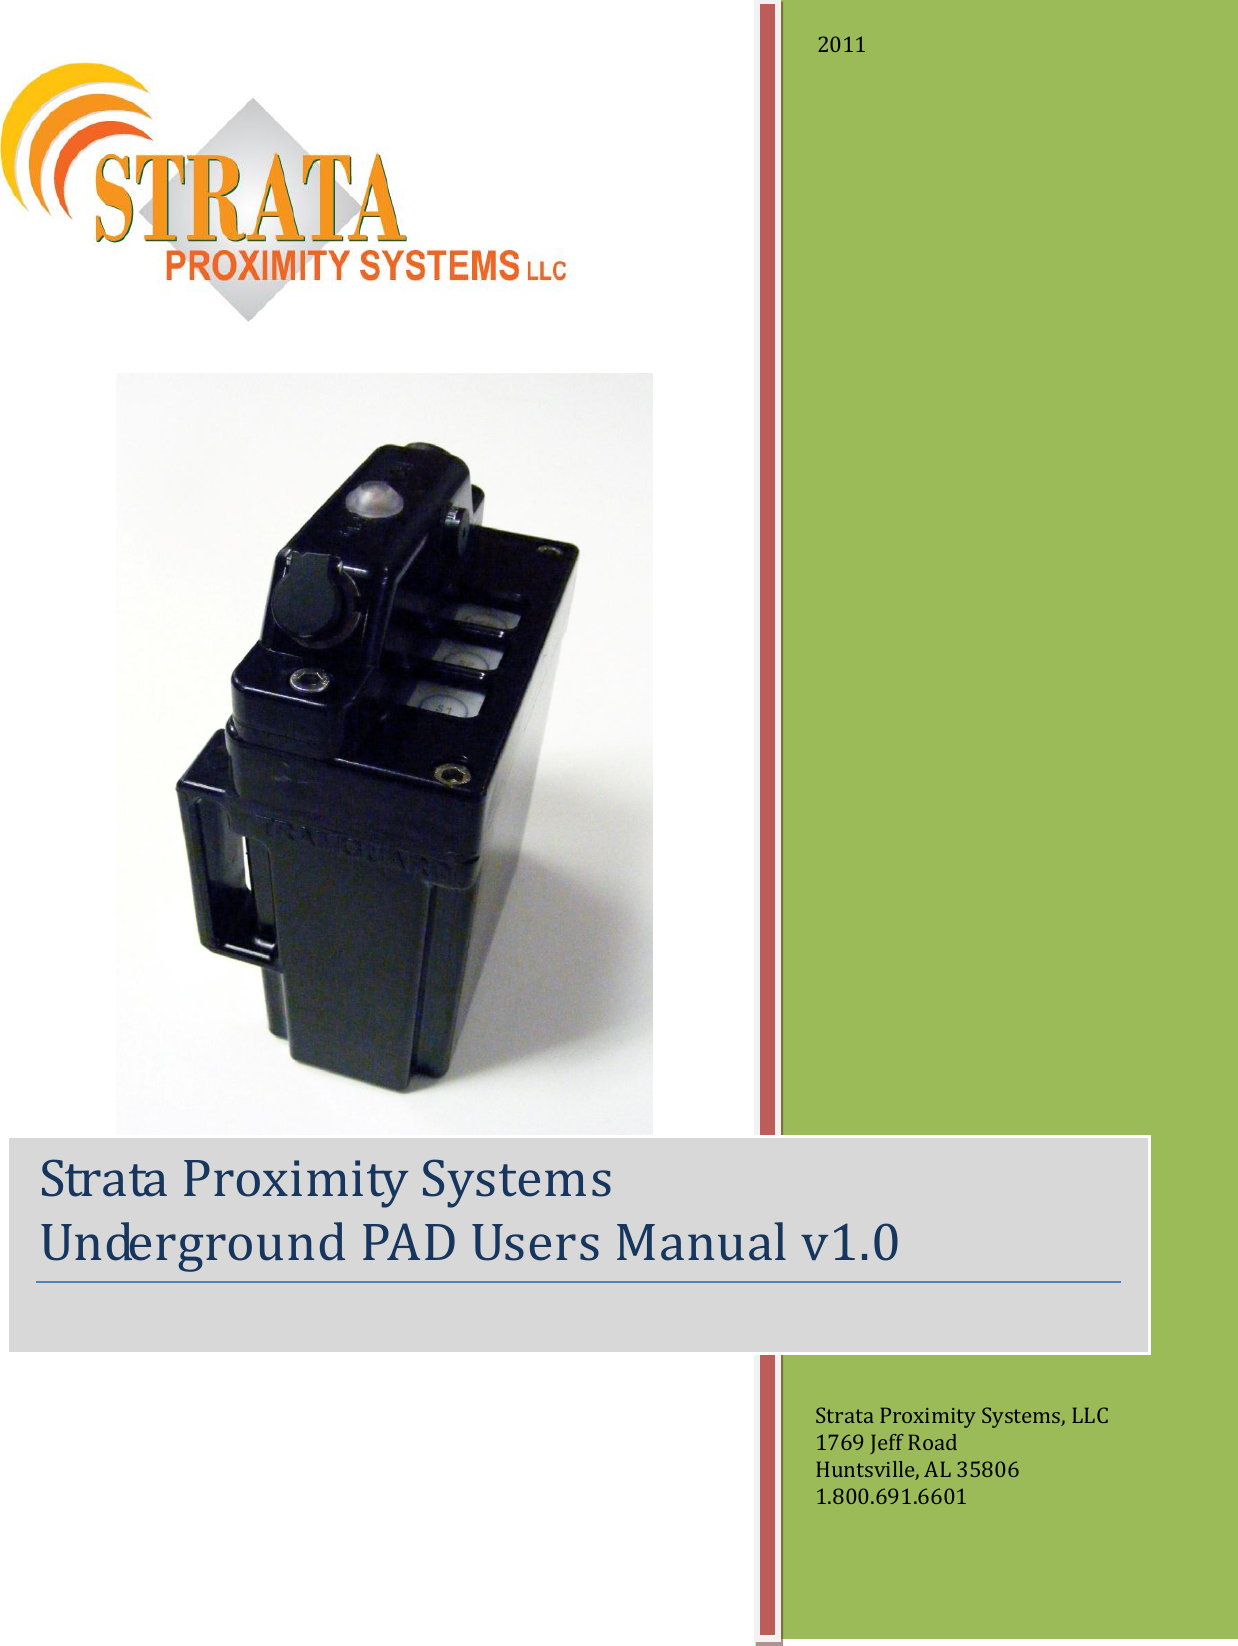                     2011           Strata Proximity Systems, LLC 1769 Jeff Road Huntsville, AL 35806 1.800.691.6601 Strata Proximity Systems Underground PAD Users Manual v1.0   